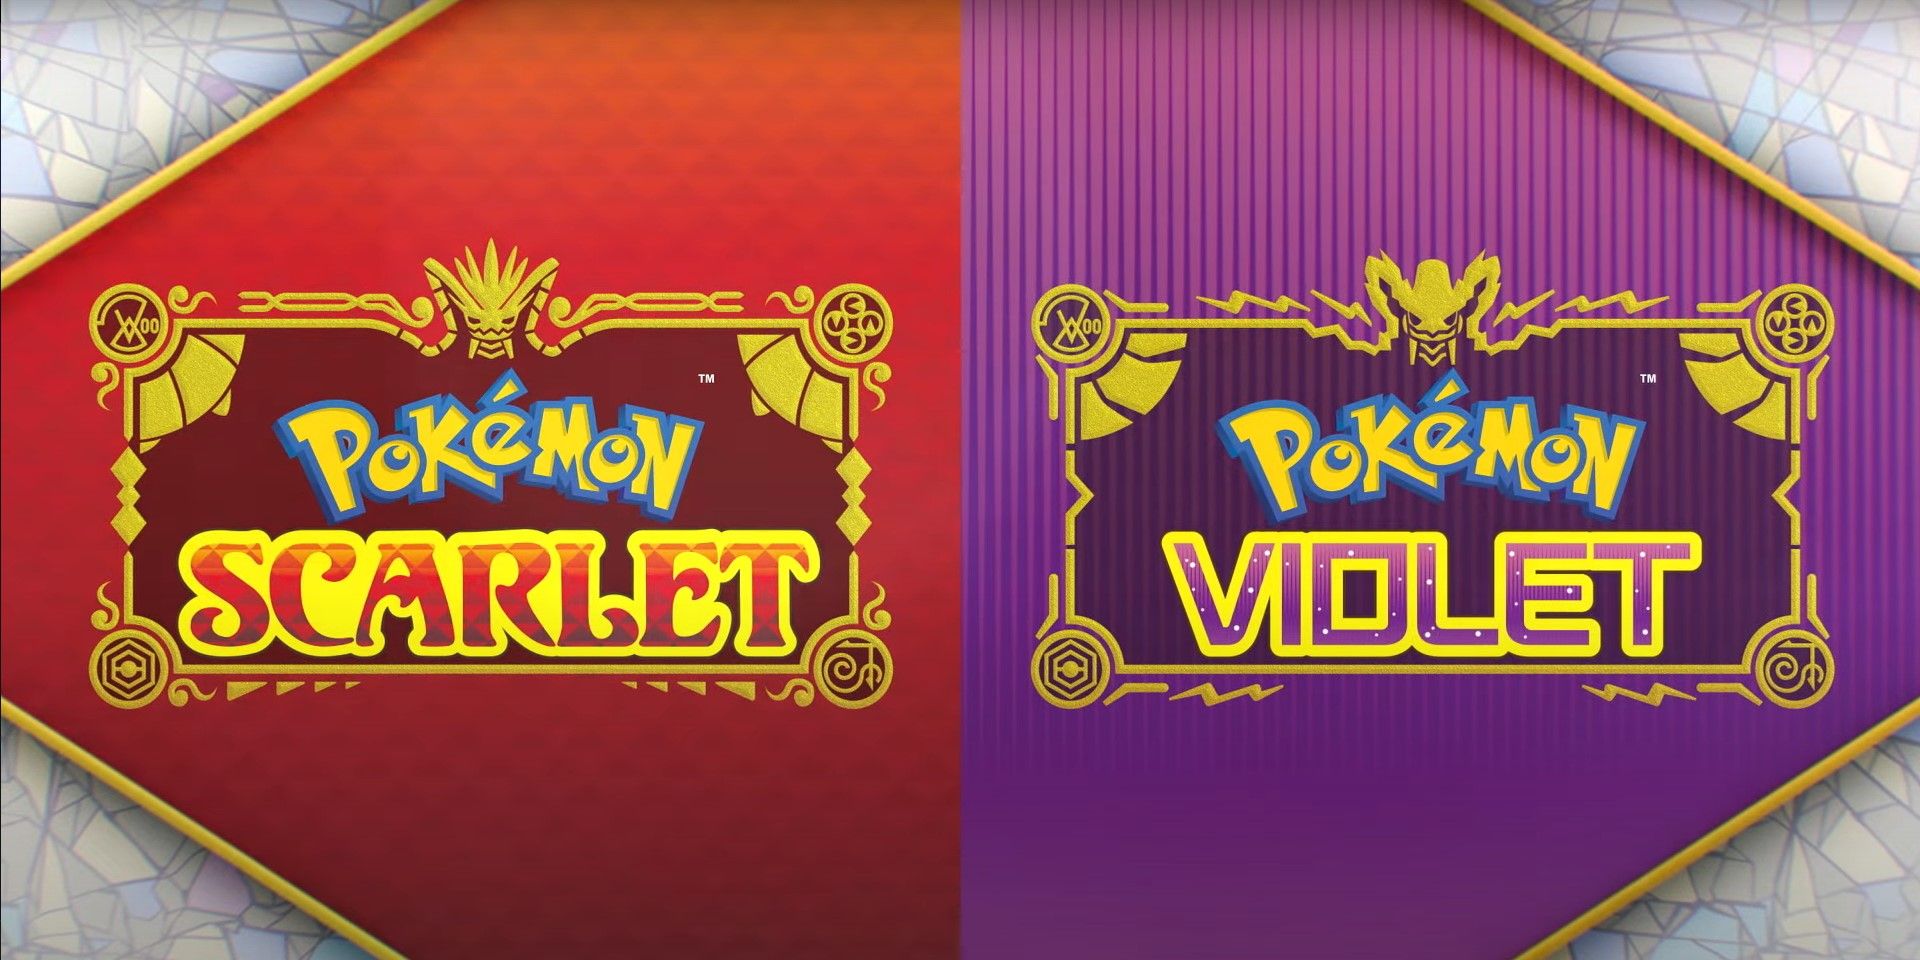 Pokémon Scarlet, Violet Leaks Have Fans Deciphering Blurry Pics